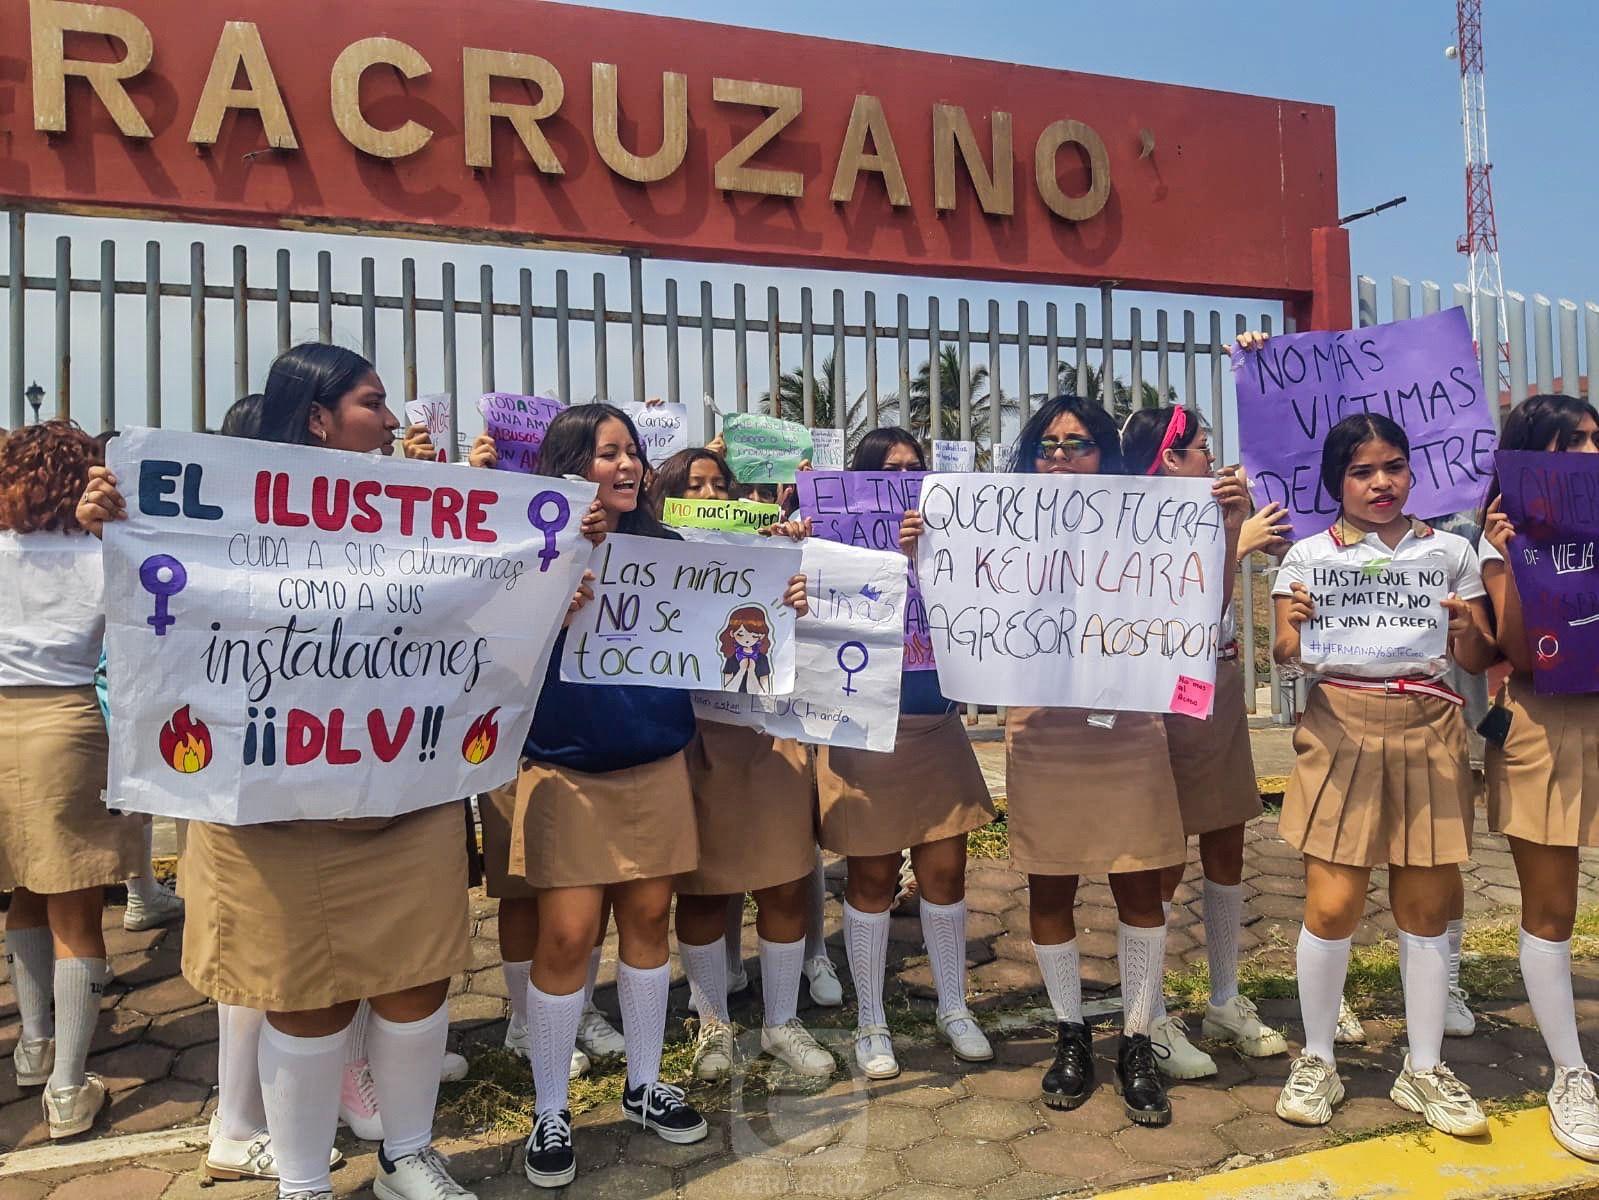 ¡Ilustre abusador! Alumnas denuncian acoso sexual en Boca del Río